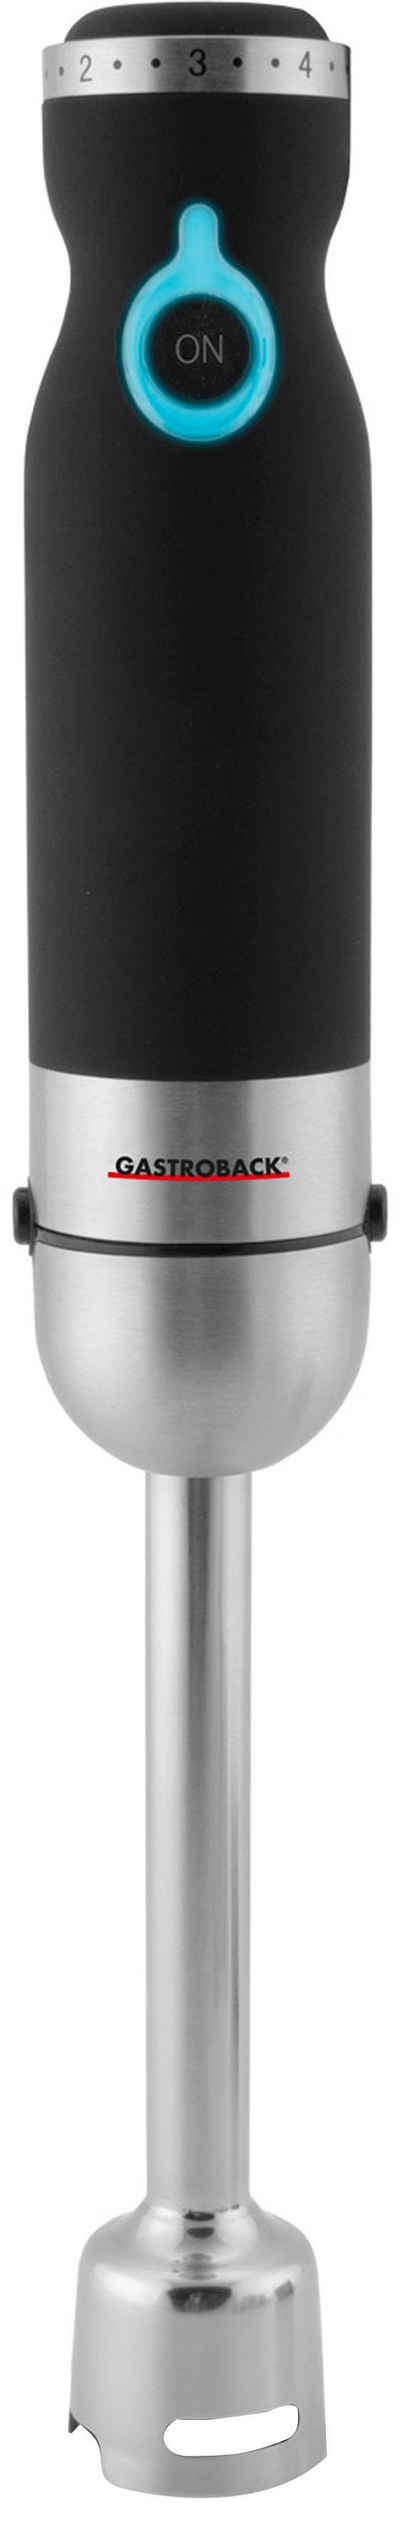 Gastroback Stabmixer 40976 Design Advanced Pro E, 800 W